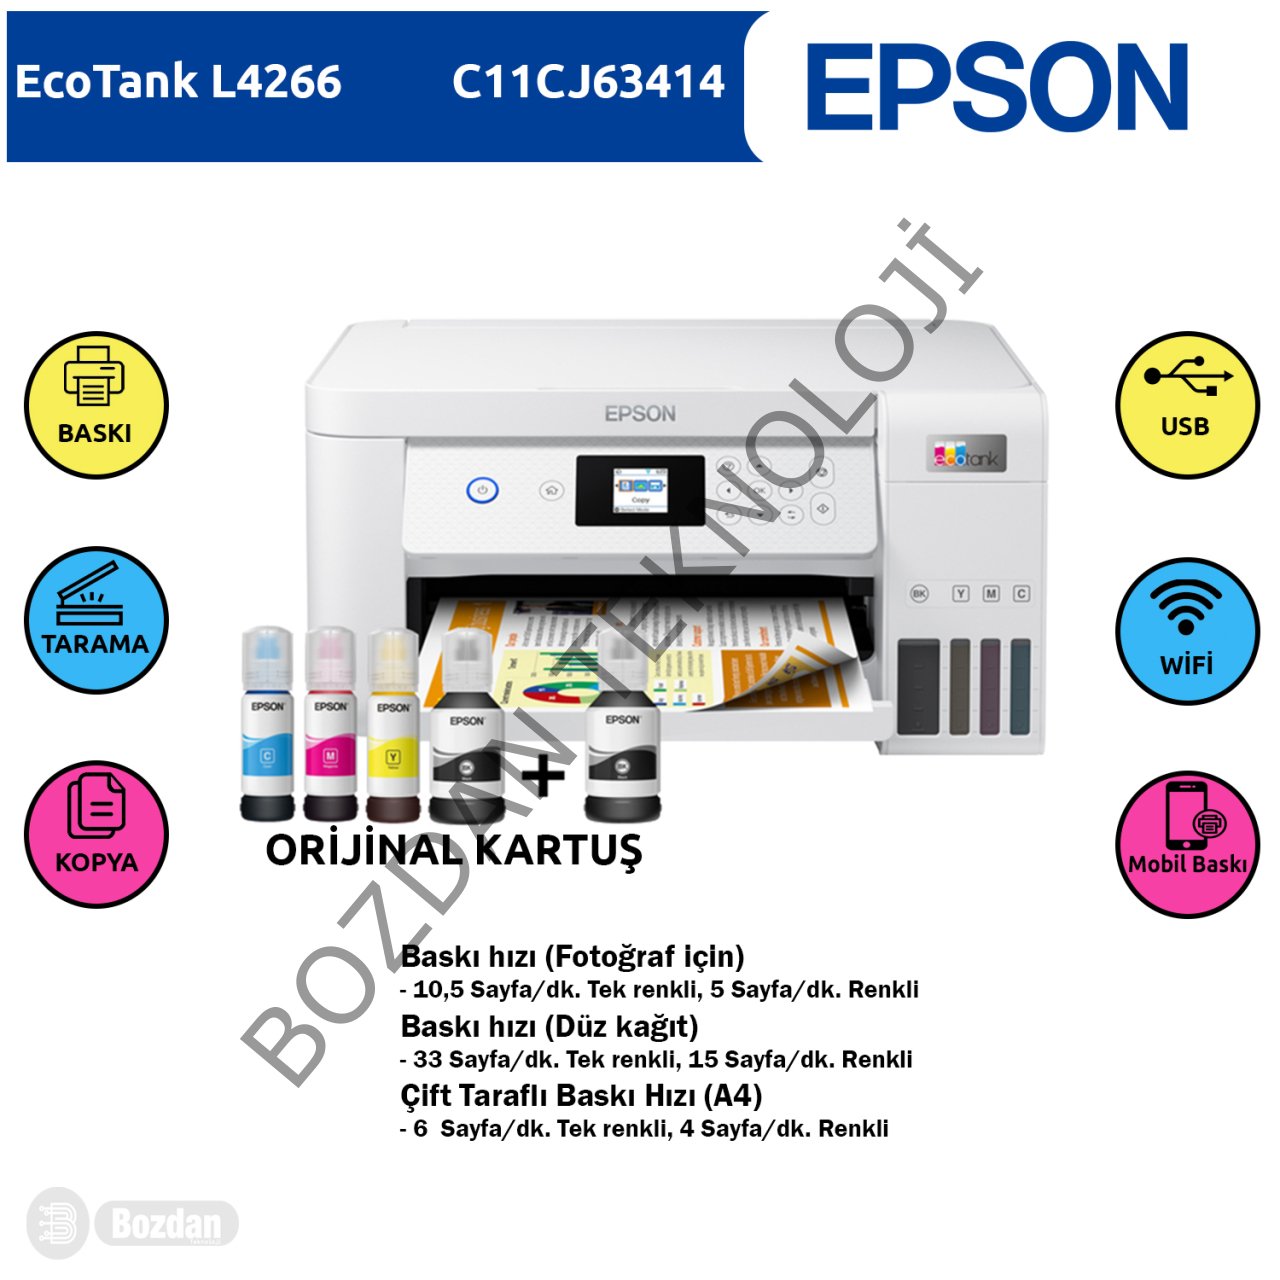 Epson Ecotank L4266 Renkli Mürekkep Tanklı Yazıcı Baskı, Tarama, Kopya ( Usb, Wifi, Wi-Fi Direct ) + Orijinal Epson (1x 127ml BK, 3x 70ml CMY) + Ekstra Siyah Mürekkep Seti C11CJ63414